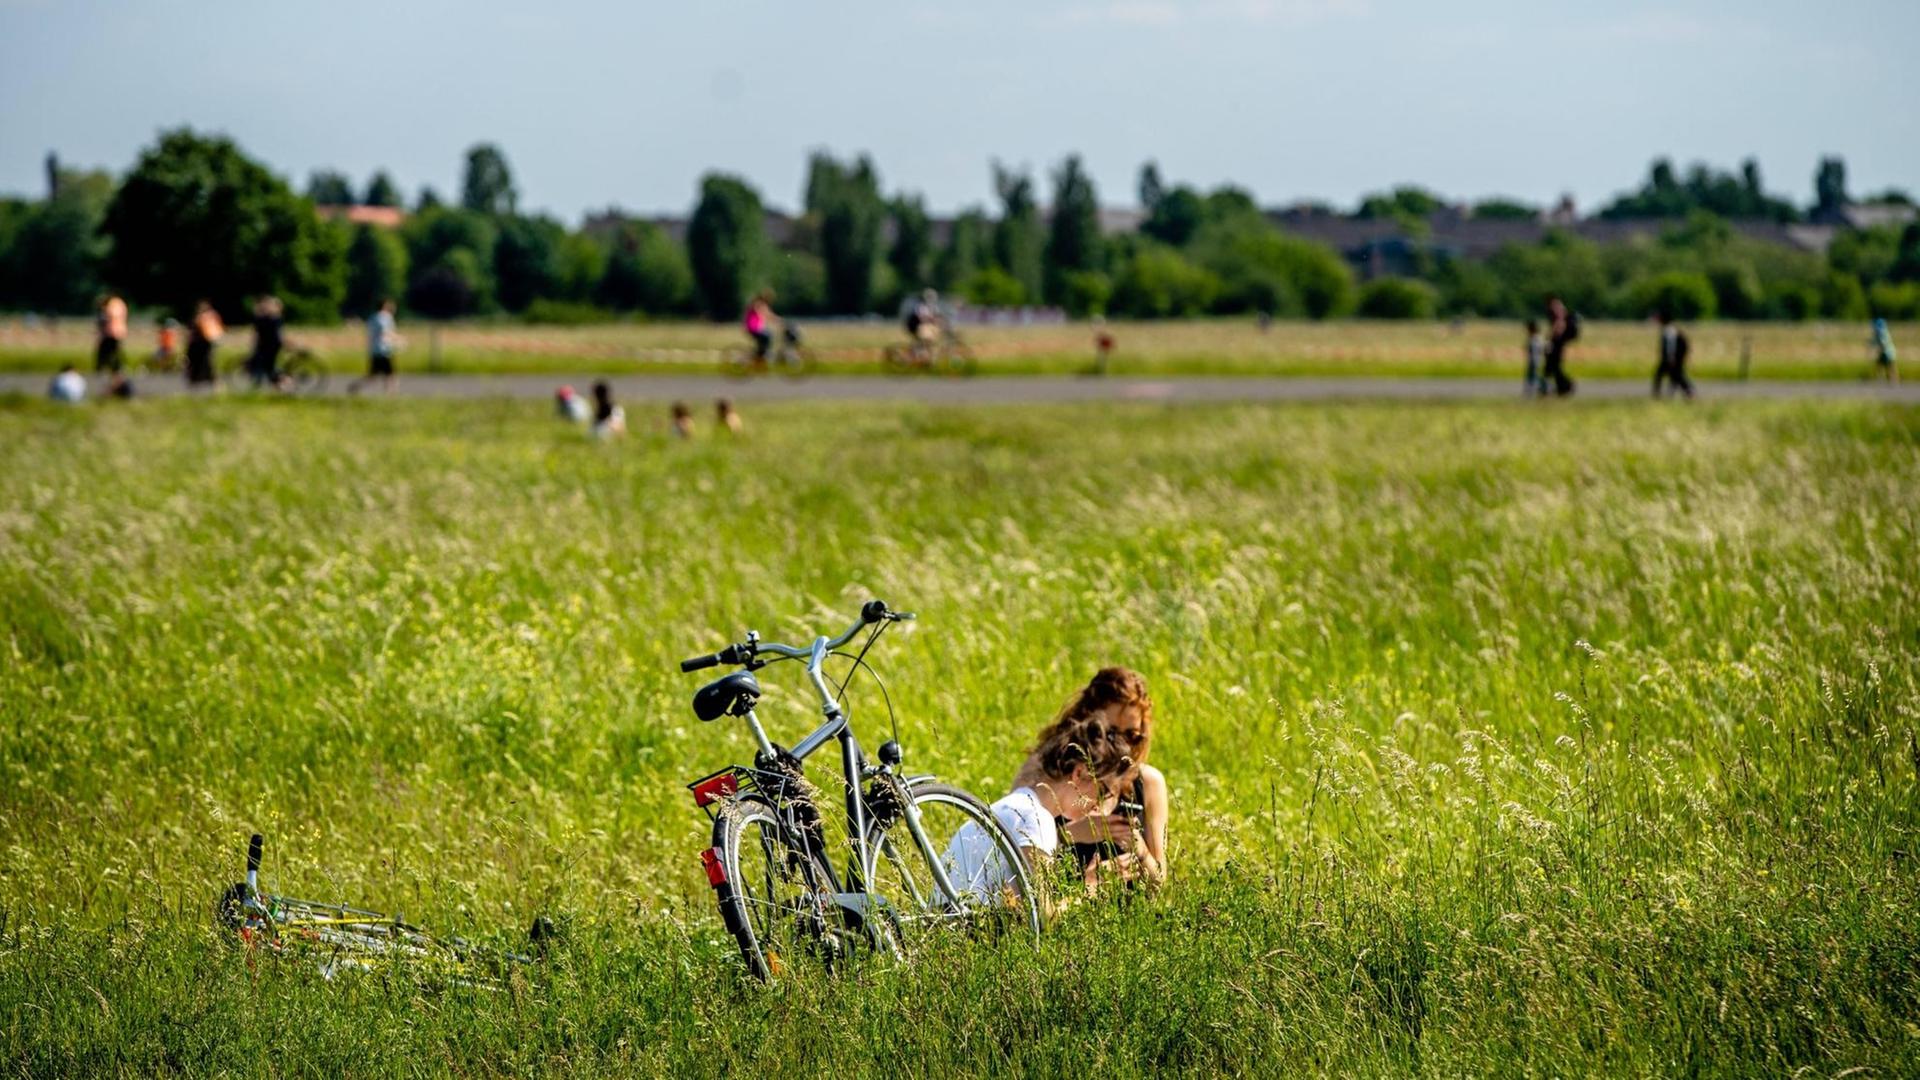 Zwei Menschen sitzen im hohen, grünen Gras, ein Rad steht daneben.